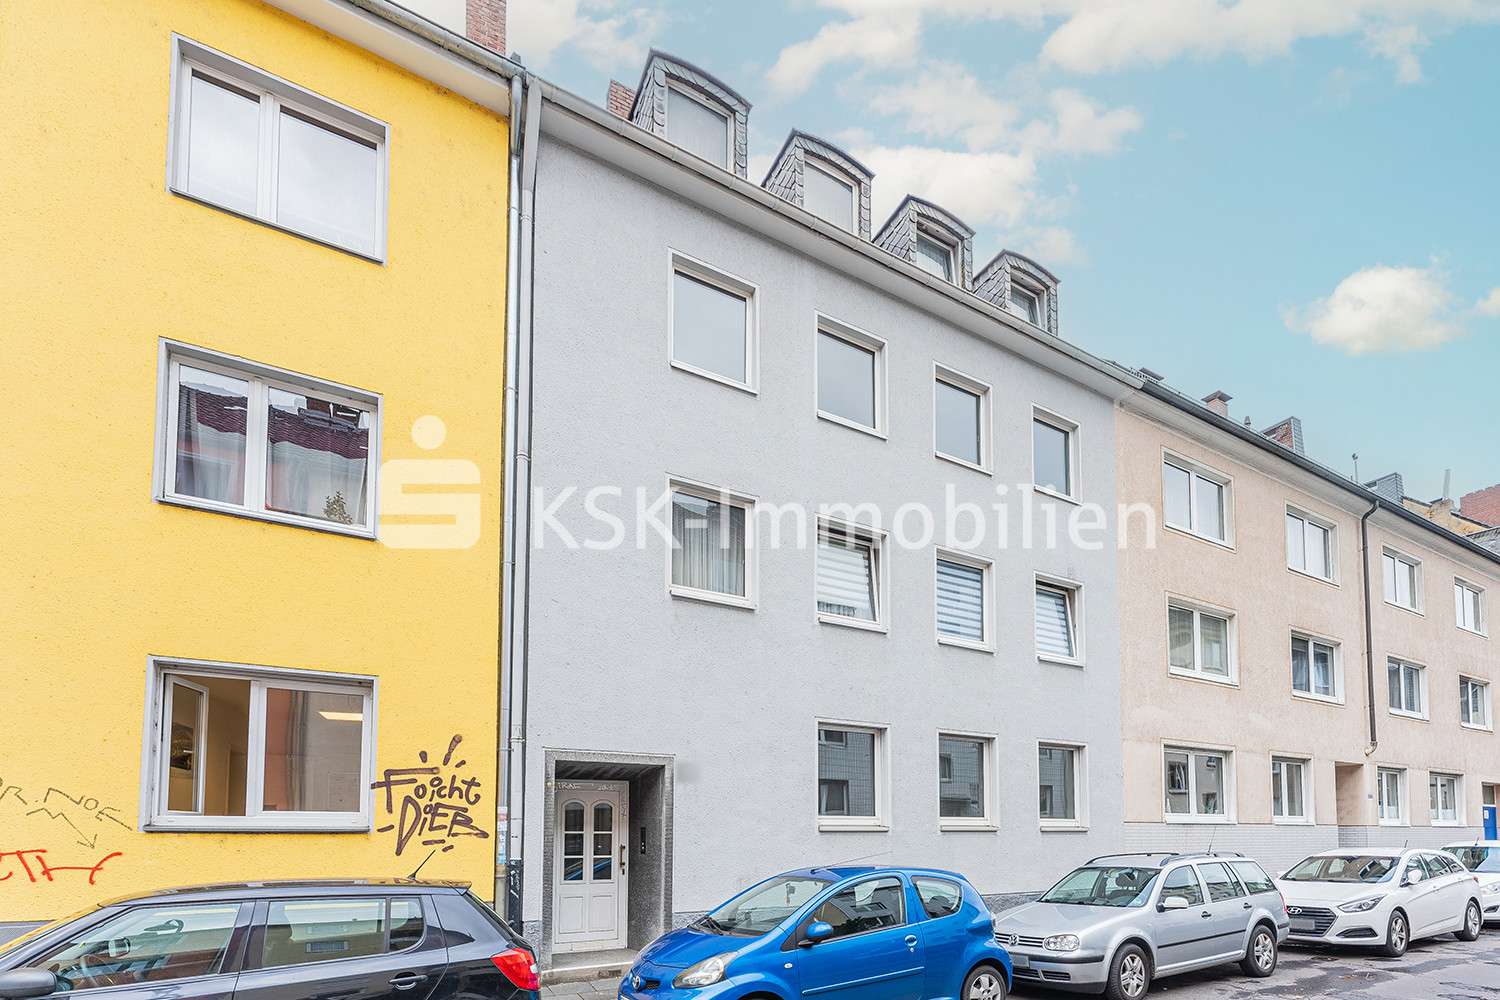 112445 Außenansicht - Mehrfamilienhaus in 51063 Köln mit 294m² als Kapitalanlage kaufen